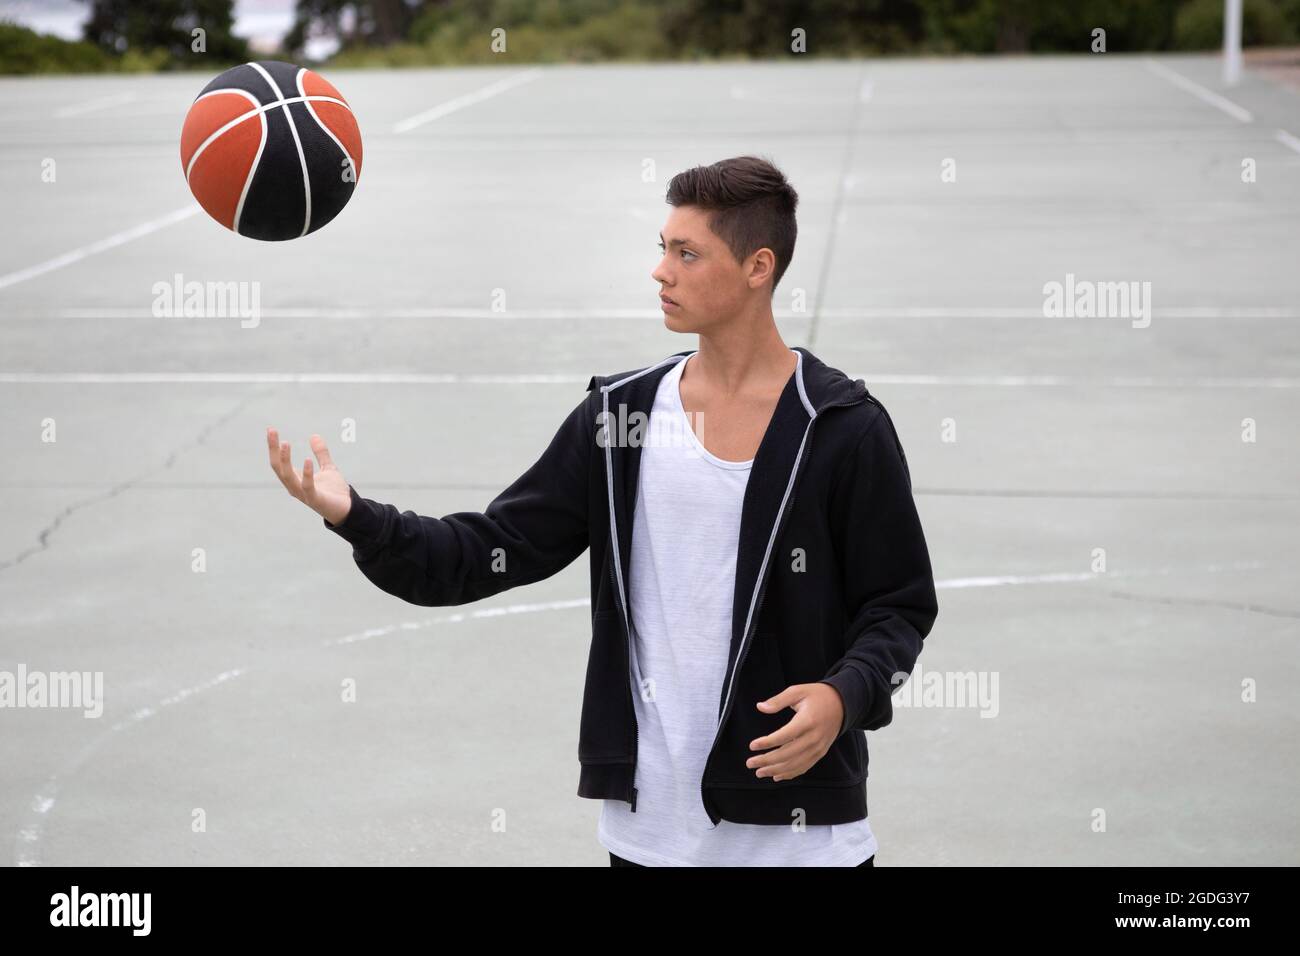 Les adolescents de sexe masculin de basket-ball sur un terrain de basket ball lancer et attraper Banque D'Images